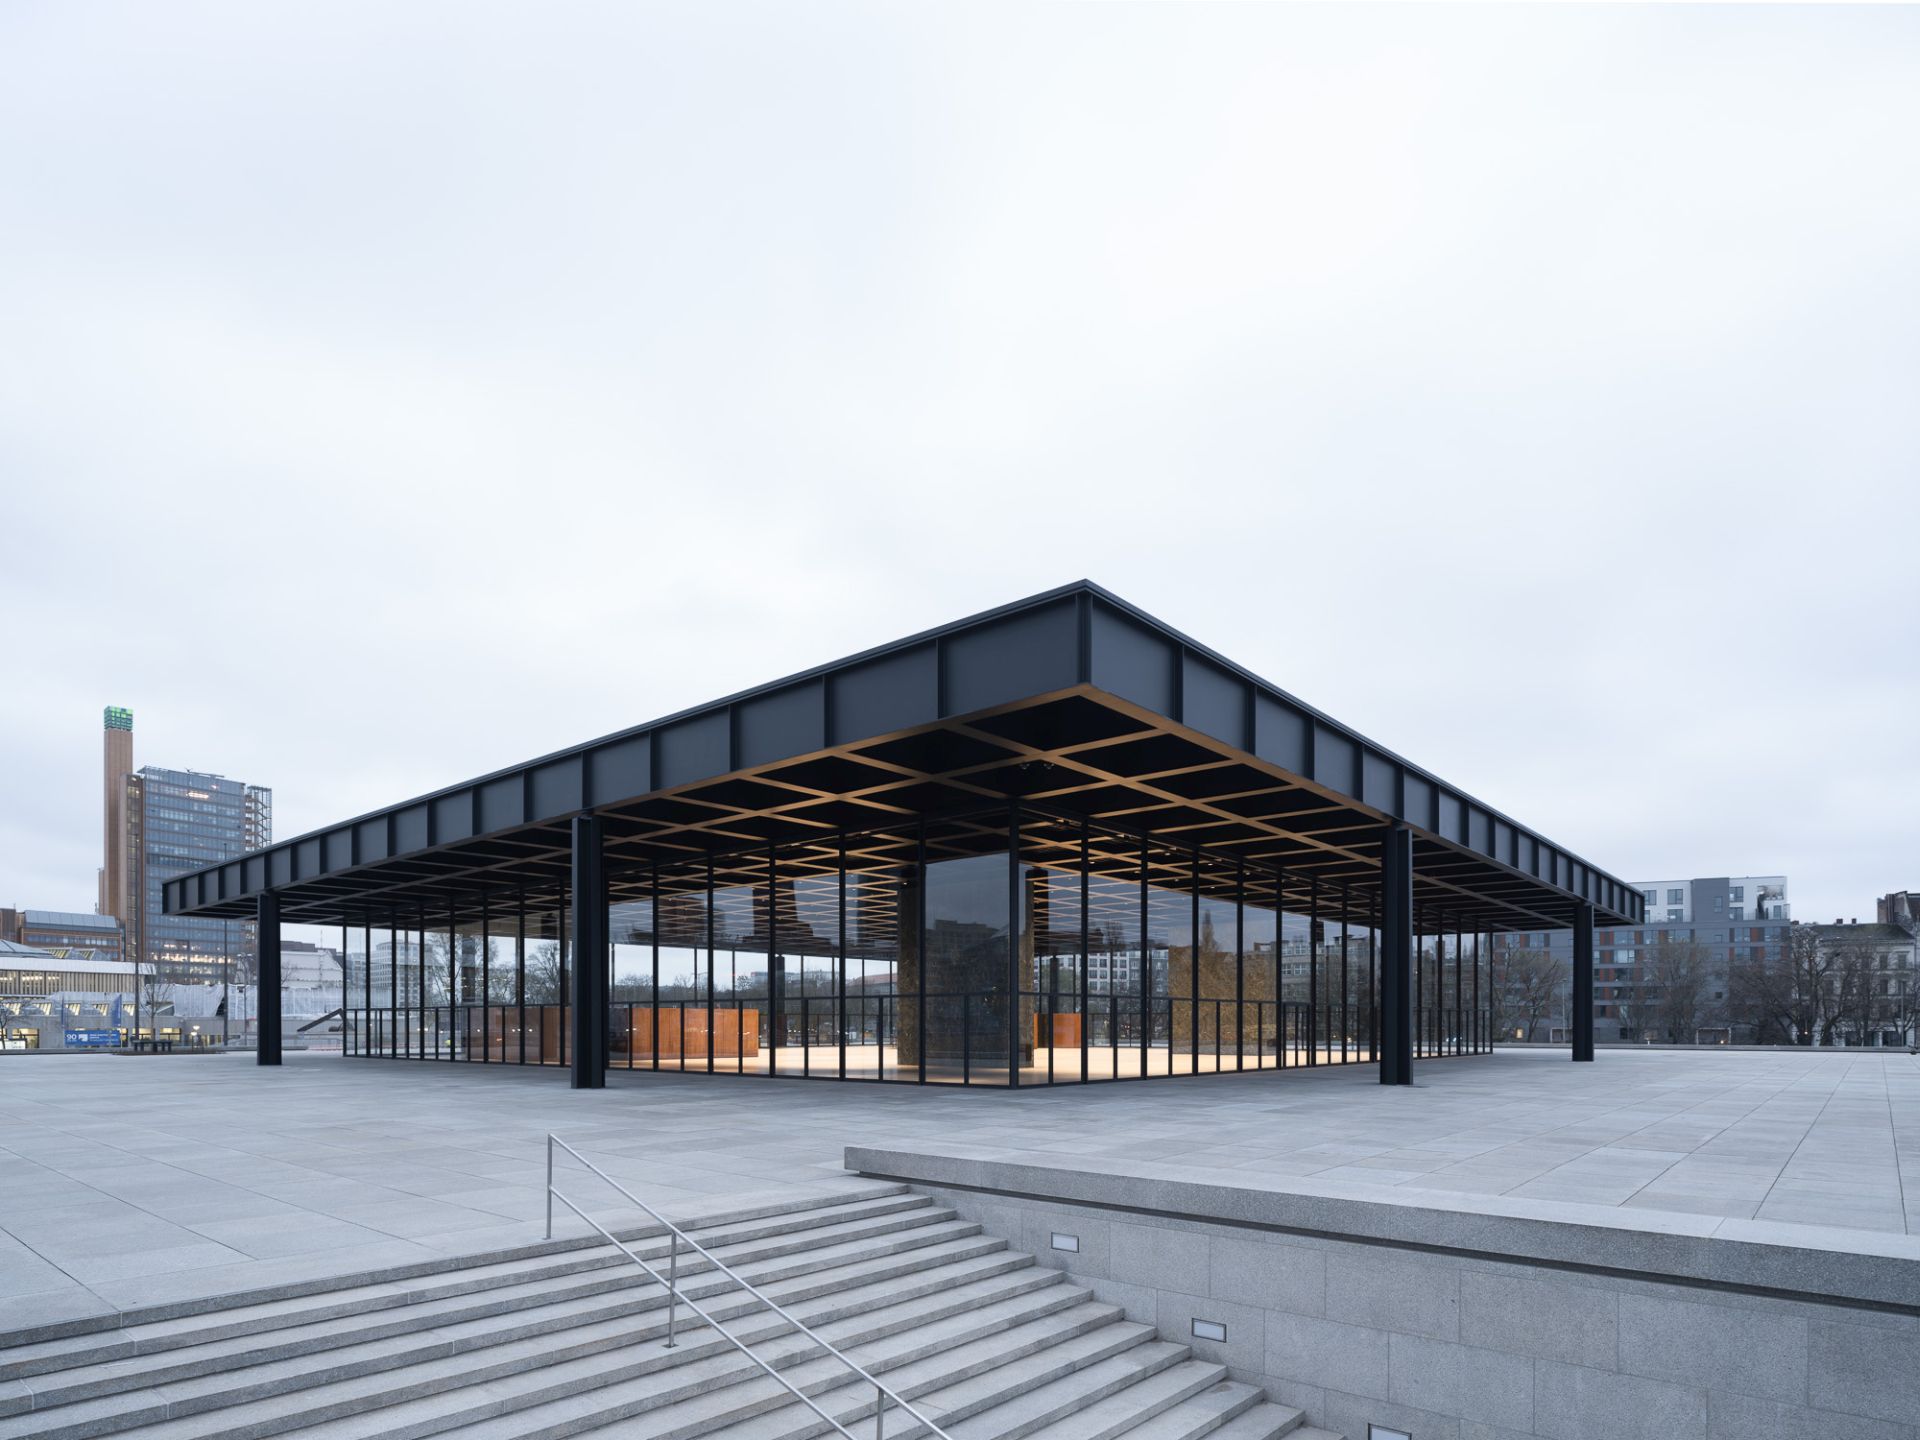 Neue Nationalgalerie Außenansicht / Exterior view, 2021 © BBR / Marcus Ebener / Ludwig Mies van der Rohe / VG Bild-Kunst, Bonn 2021